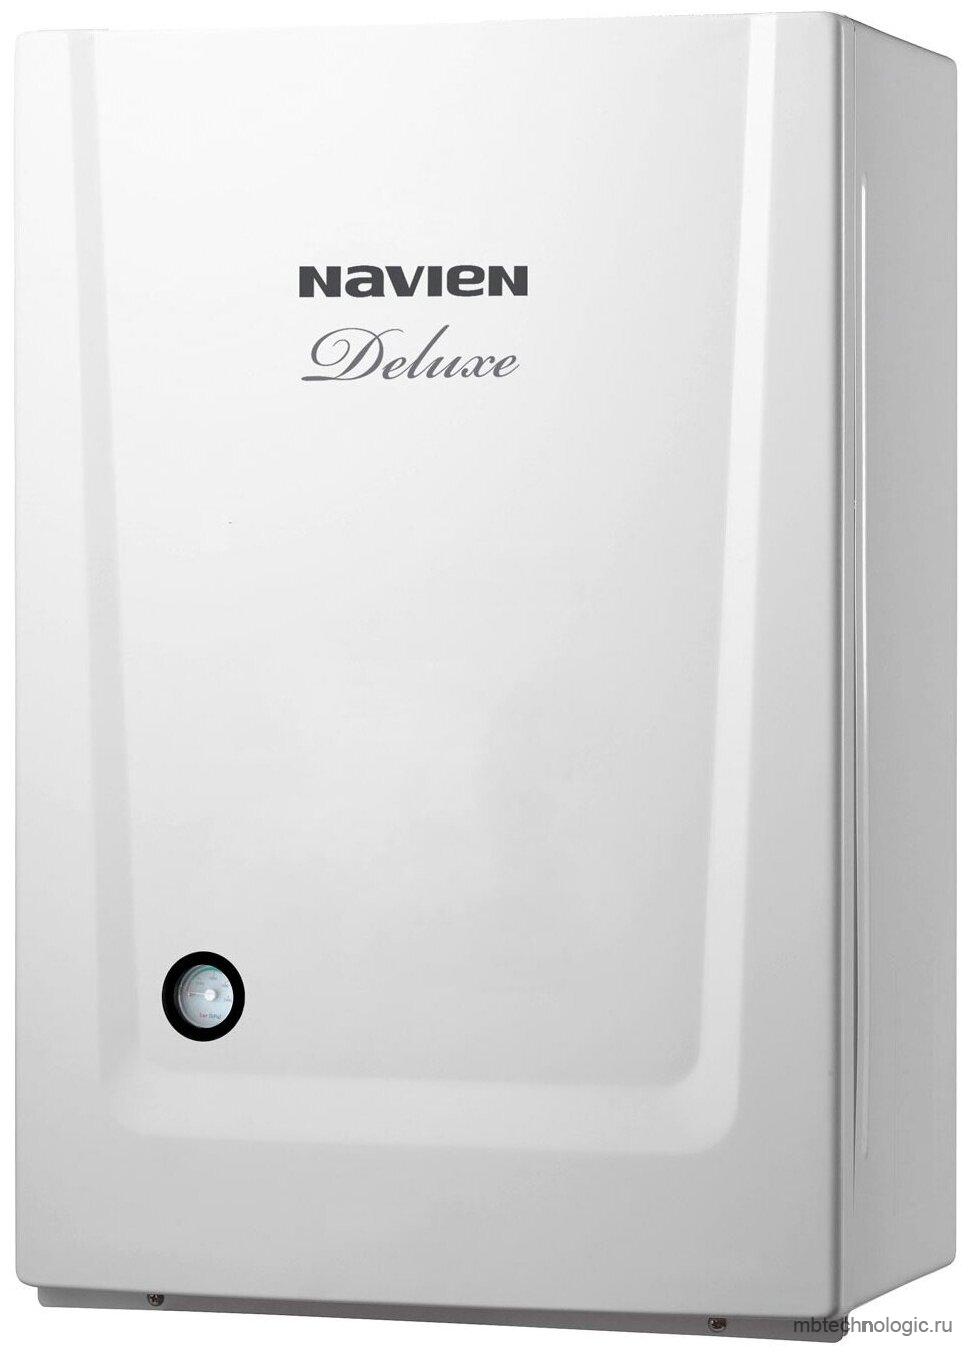 Navien Deluxe-20K COAXIAL